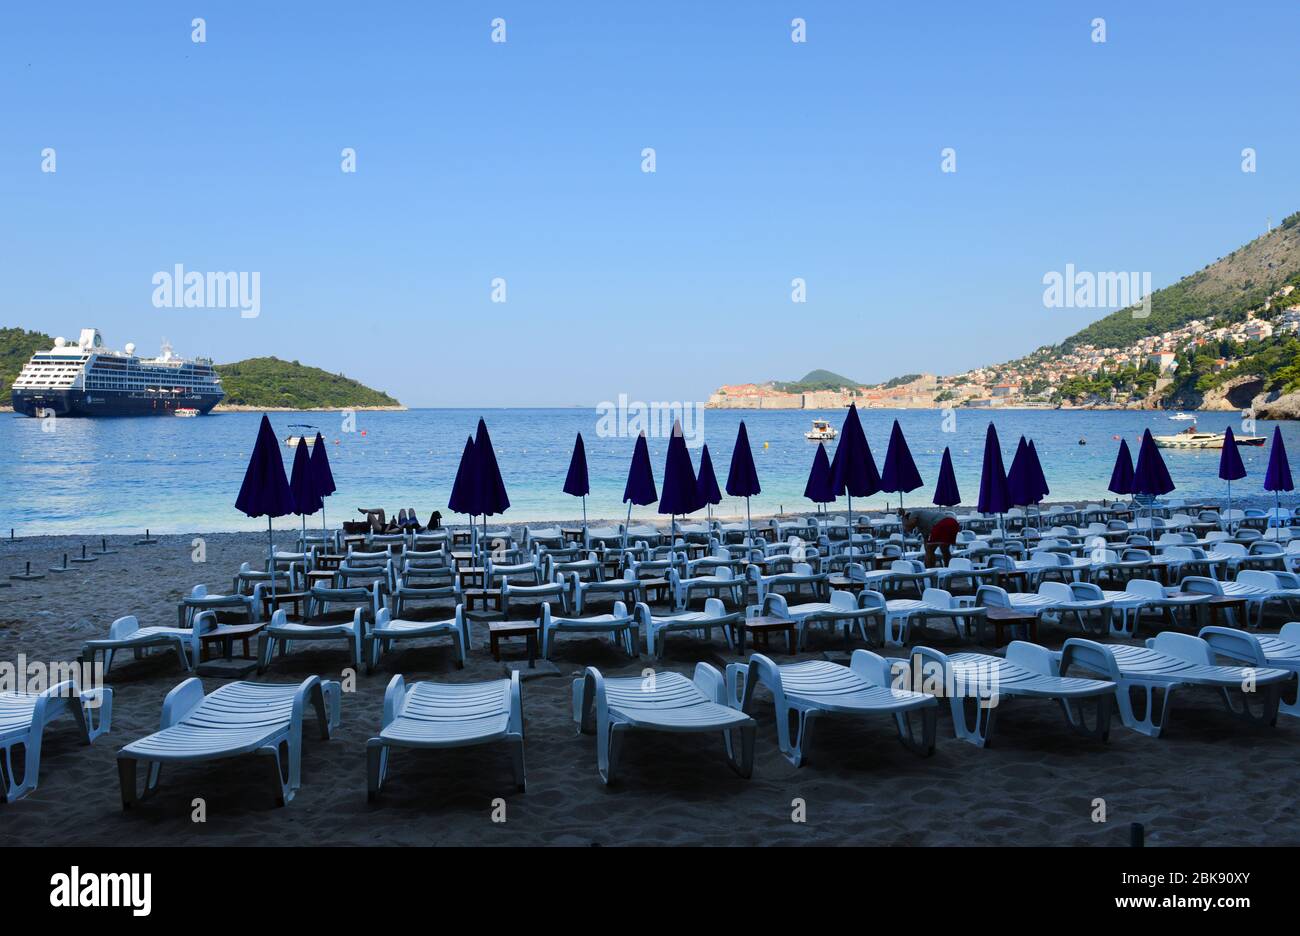 La belle plage de Sveti Jakov, en périphérie de Dubrovnik, en Croatie. Banque D'Images